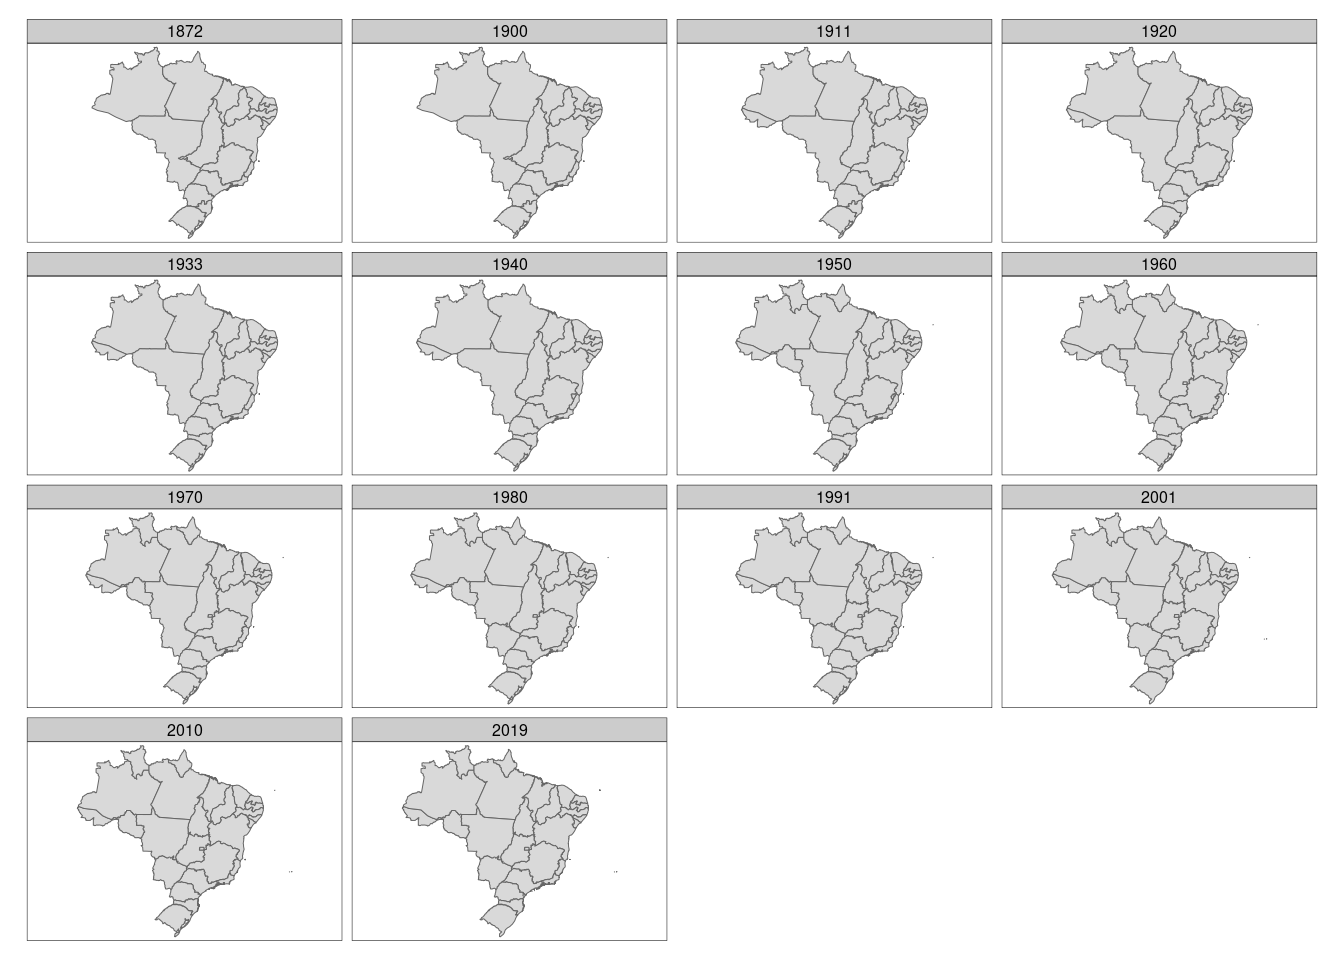 Mapa vetor facetado dos estados brasileiros ao longo do tempo com o pacote `tmap`.